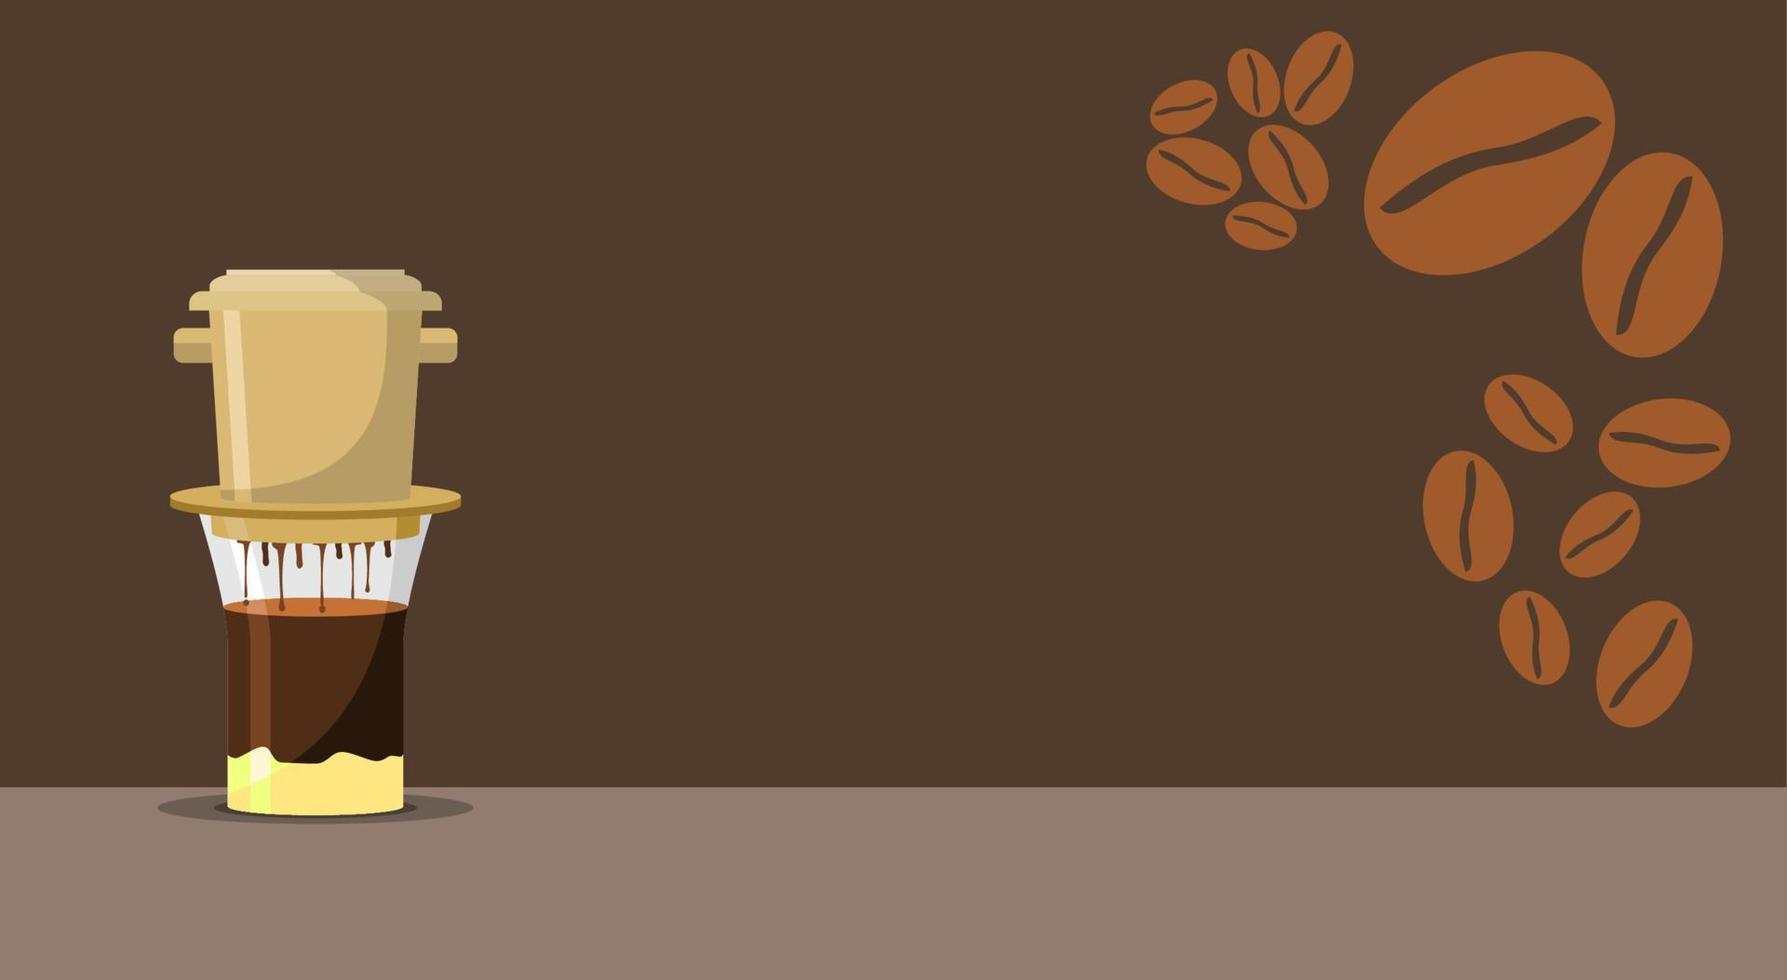 ilustración de vector de preparación de café por goteo vietnamita editable y frijoles tostados para la plantilla de fondo de texto de café con diseño relacionado con la cultura y la tradición vietnamita